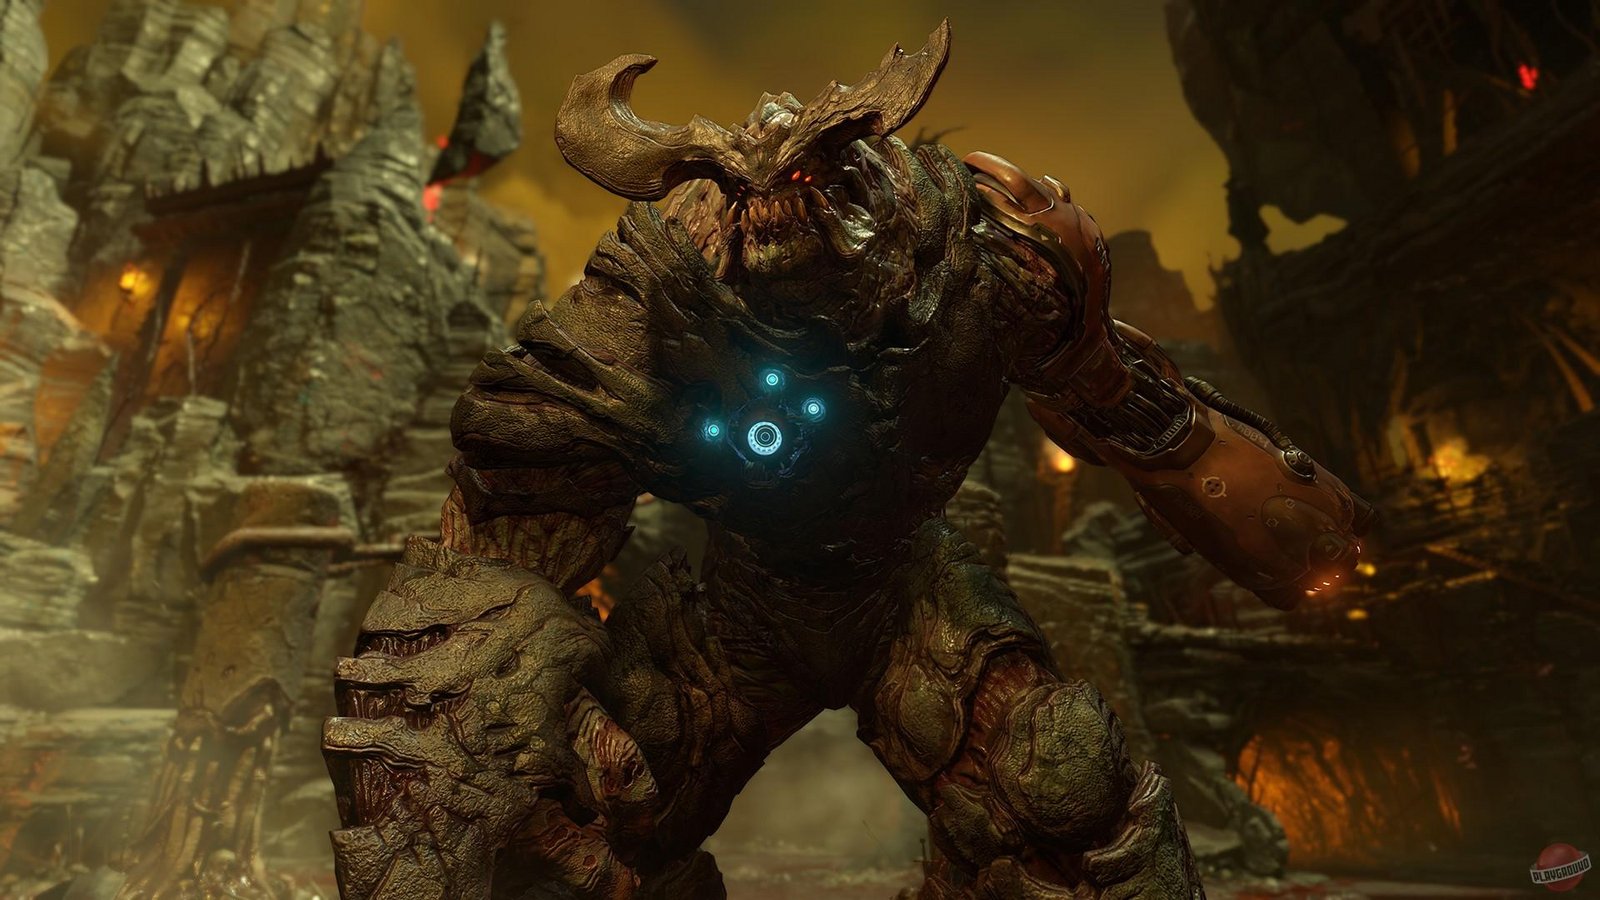 Doom 4: Unto the Evil